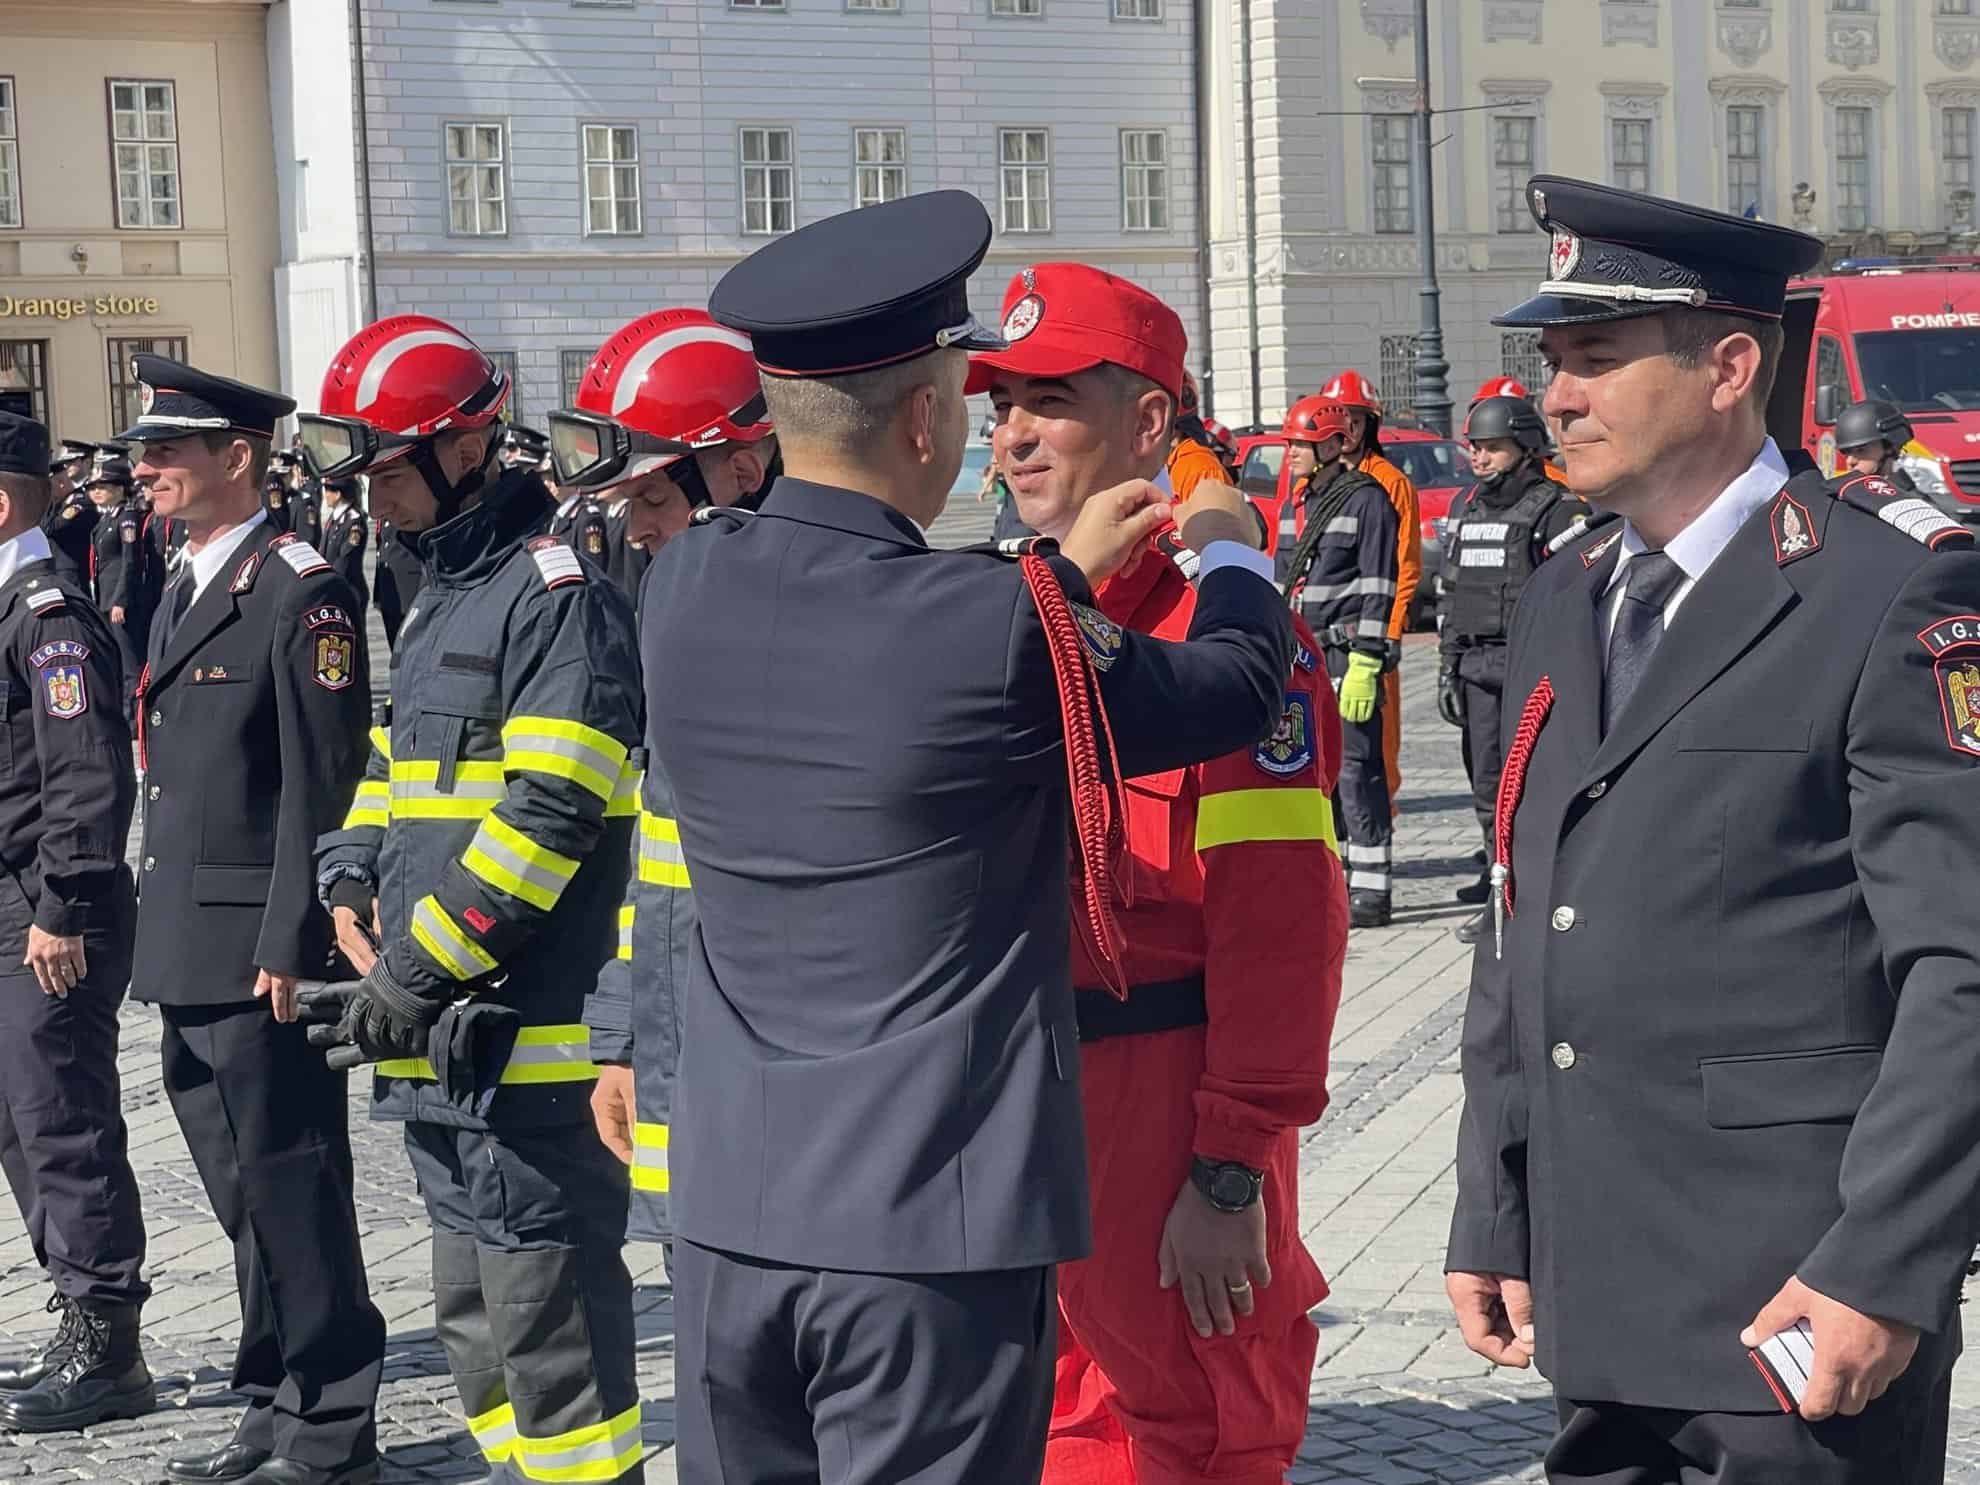 pompierul anului la sibiu, premiat în cadru festiv în piața mare. intervențiile sale eroice au salvat vieți (video)